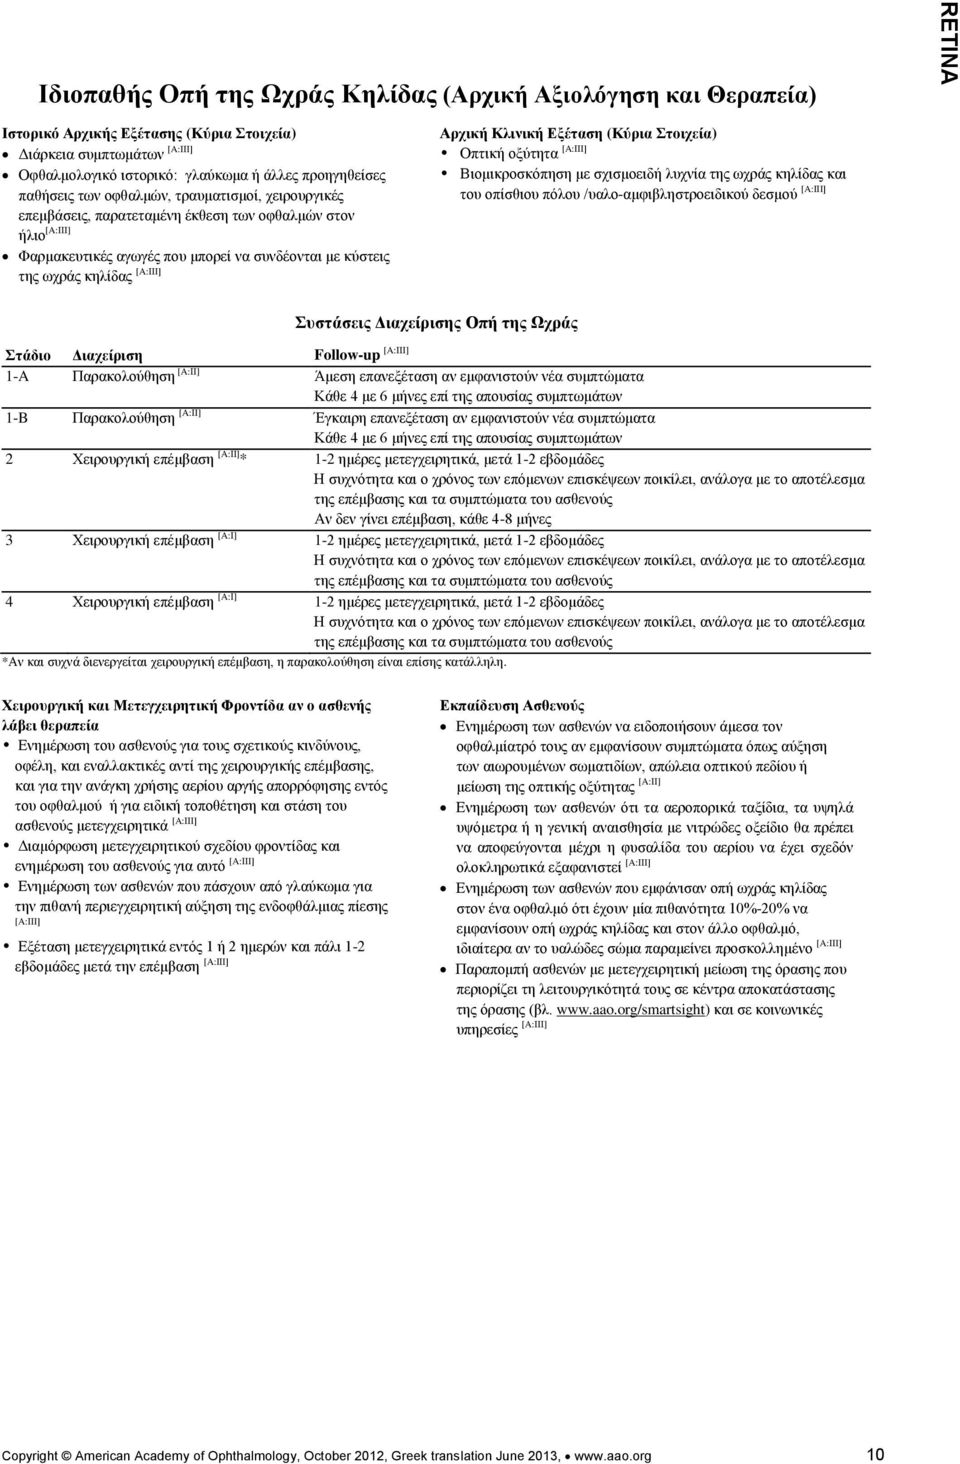 Κλινική Εξέταση (Κύρια Στοιχεία) Οπτική οξύτητα [A:IIΙ] Βιομικροσκόπηση με σχισμοειδή λυχνία της ωχράς κηλίδας και του οπίσθιου πόλου /υαλο-αμφιβληστροειδικού δεσμού [A:IIΙ] Συστάσεις Διαχείρισης Οπή